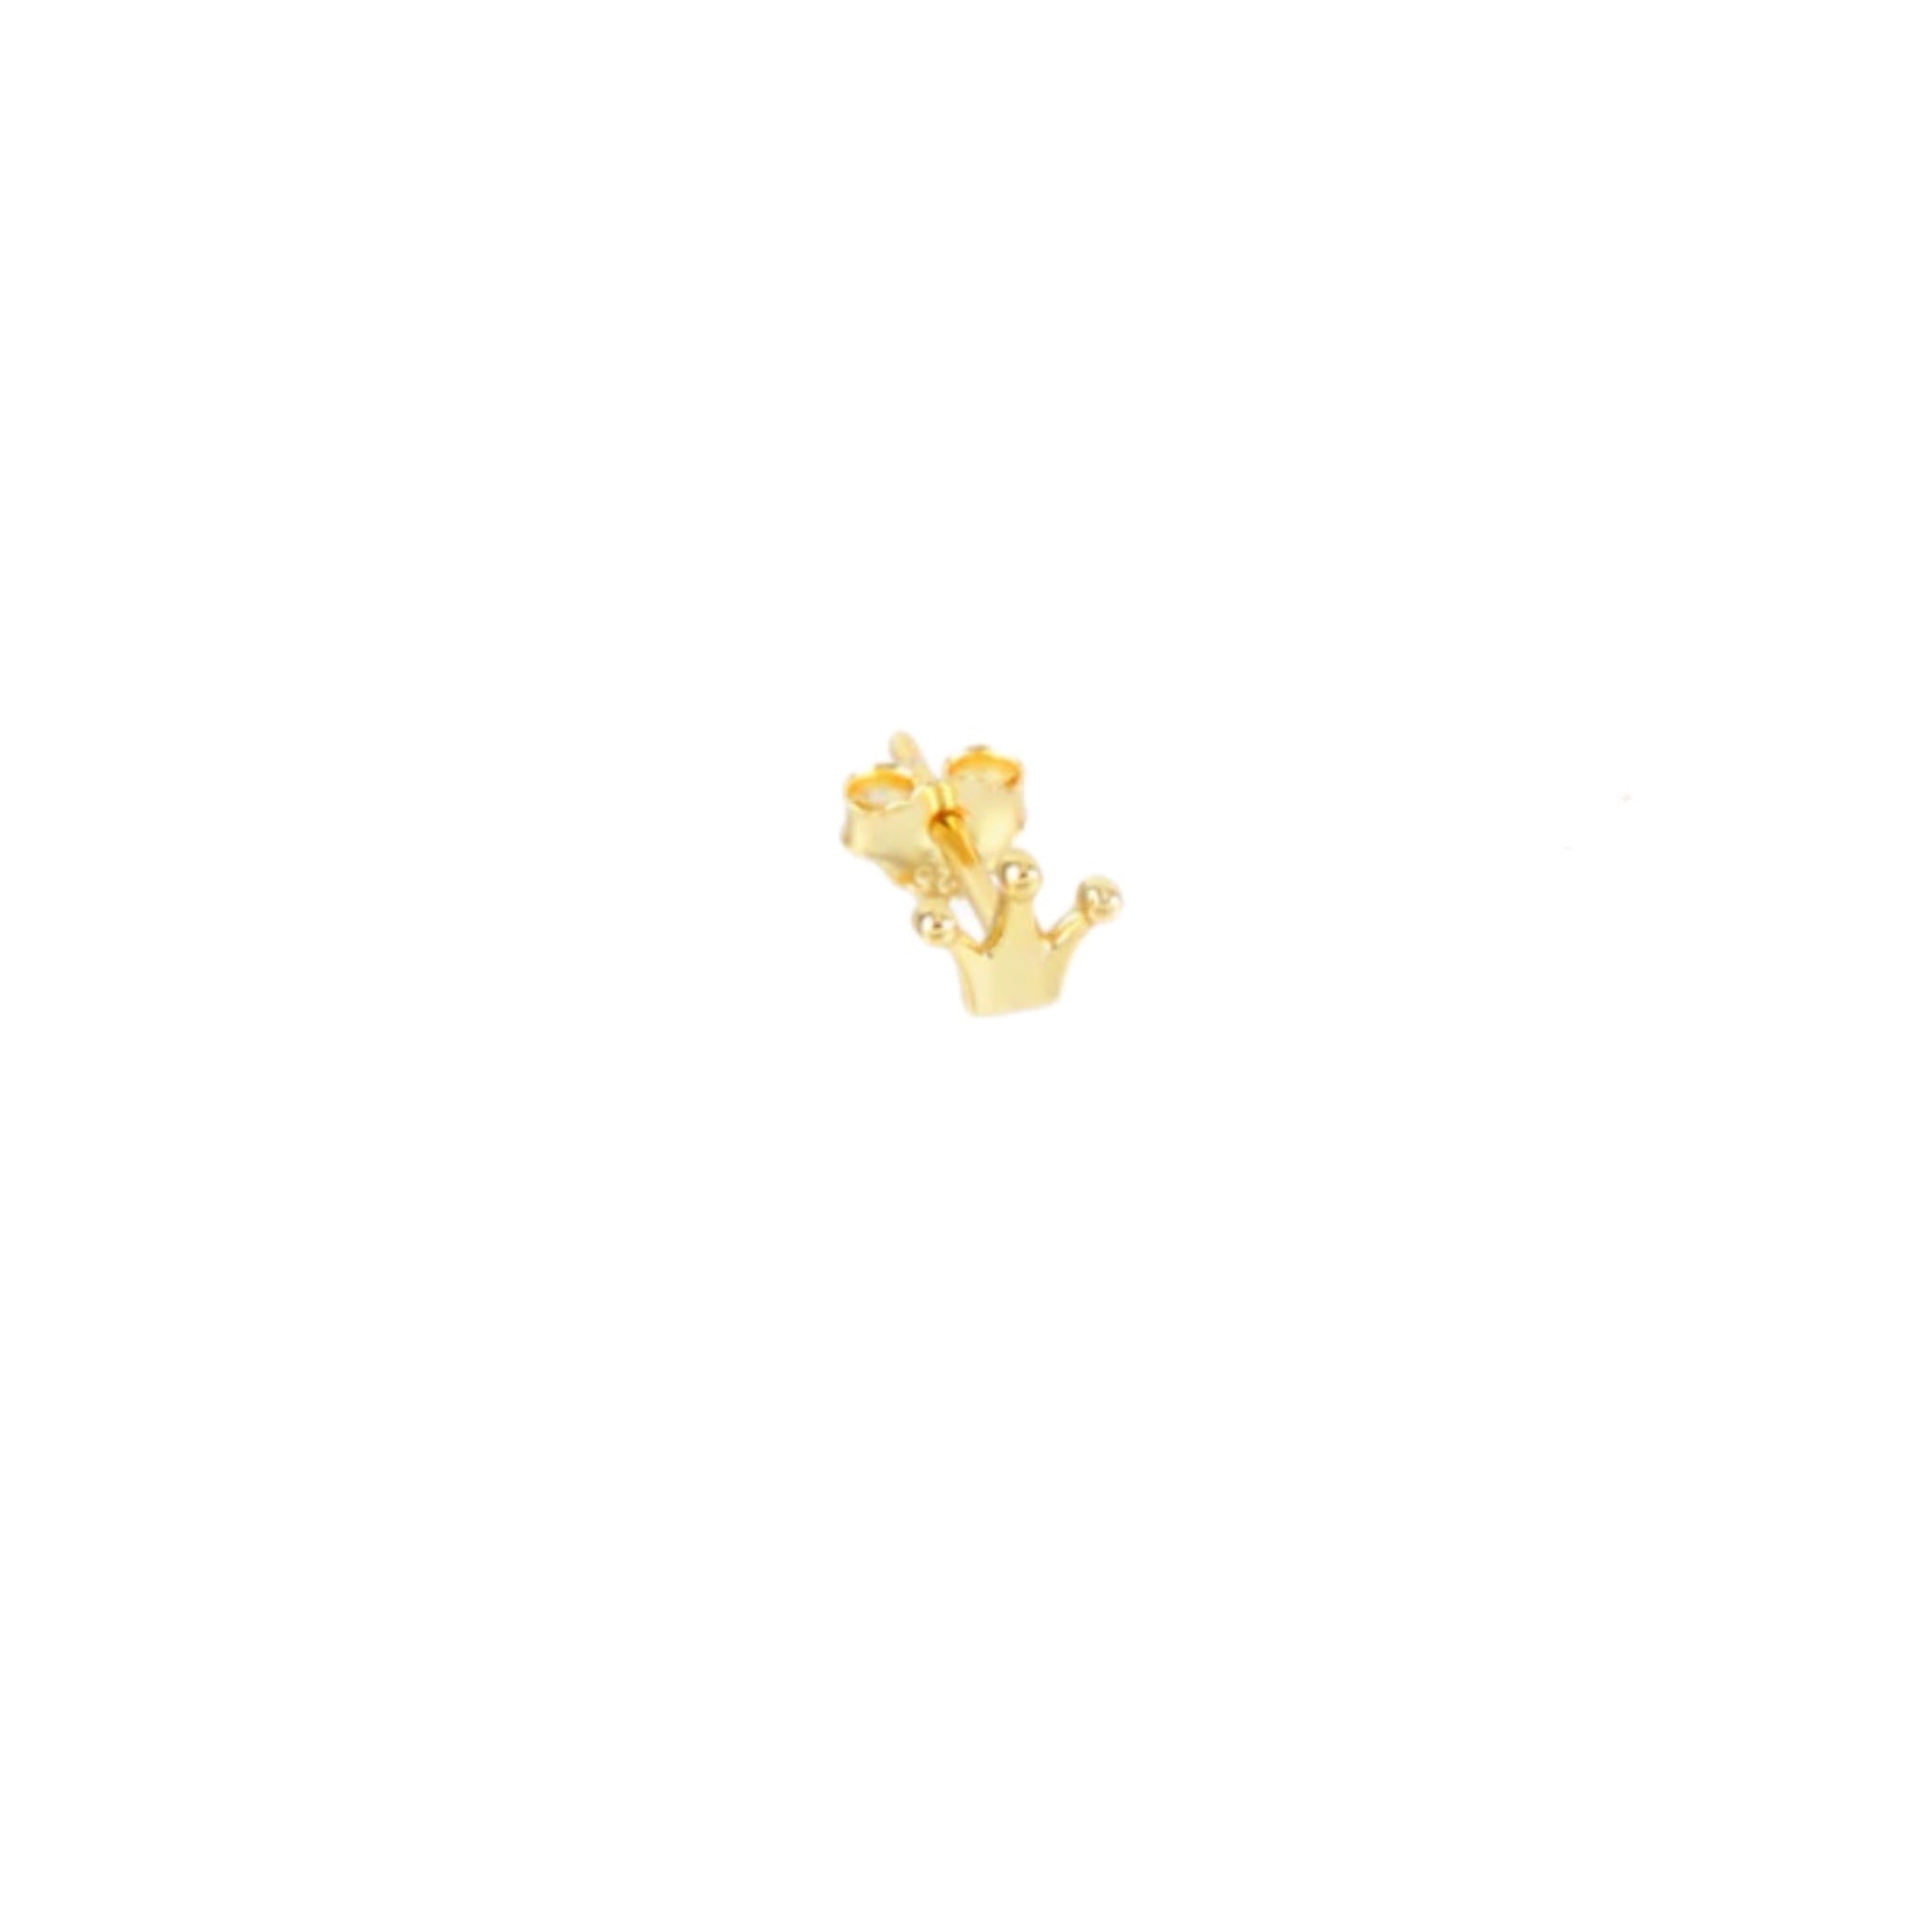 Piercing Coronita Oro - Piedra de Toque